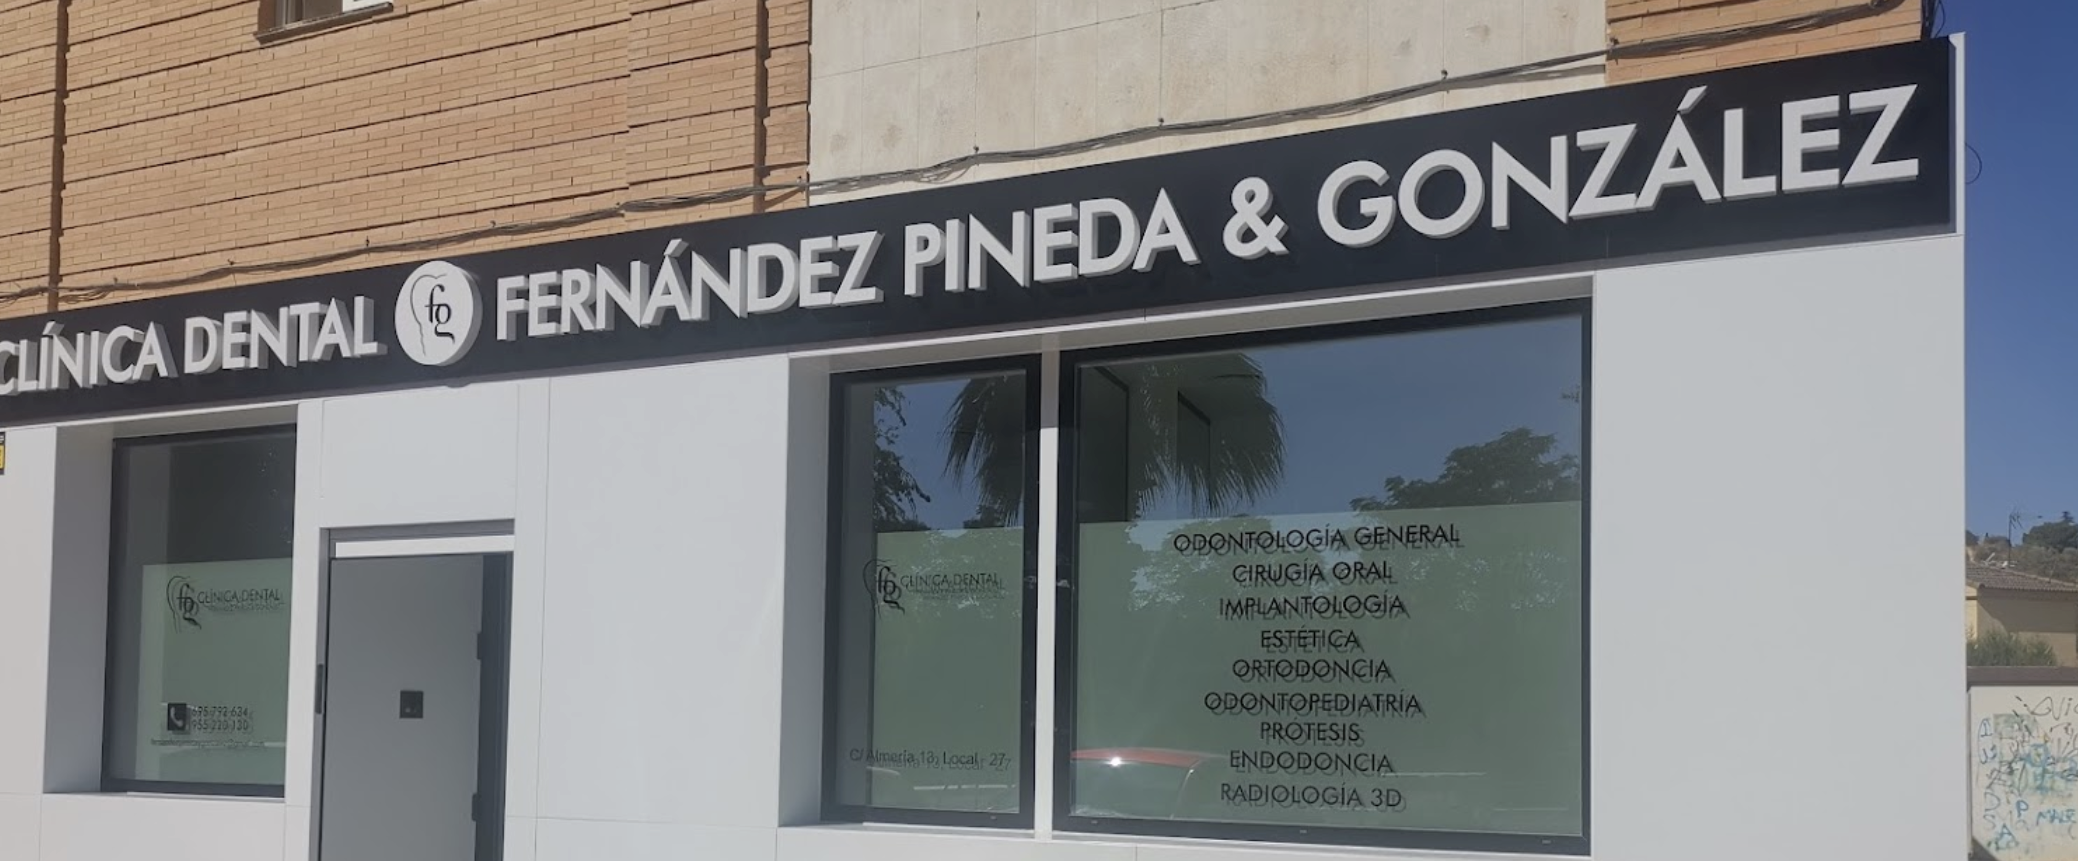 Clínica Dental Fernández Pineda y González en Gelves, Sevilla